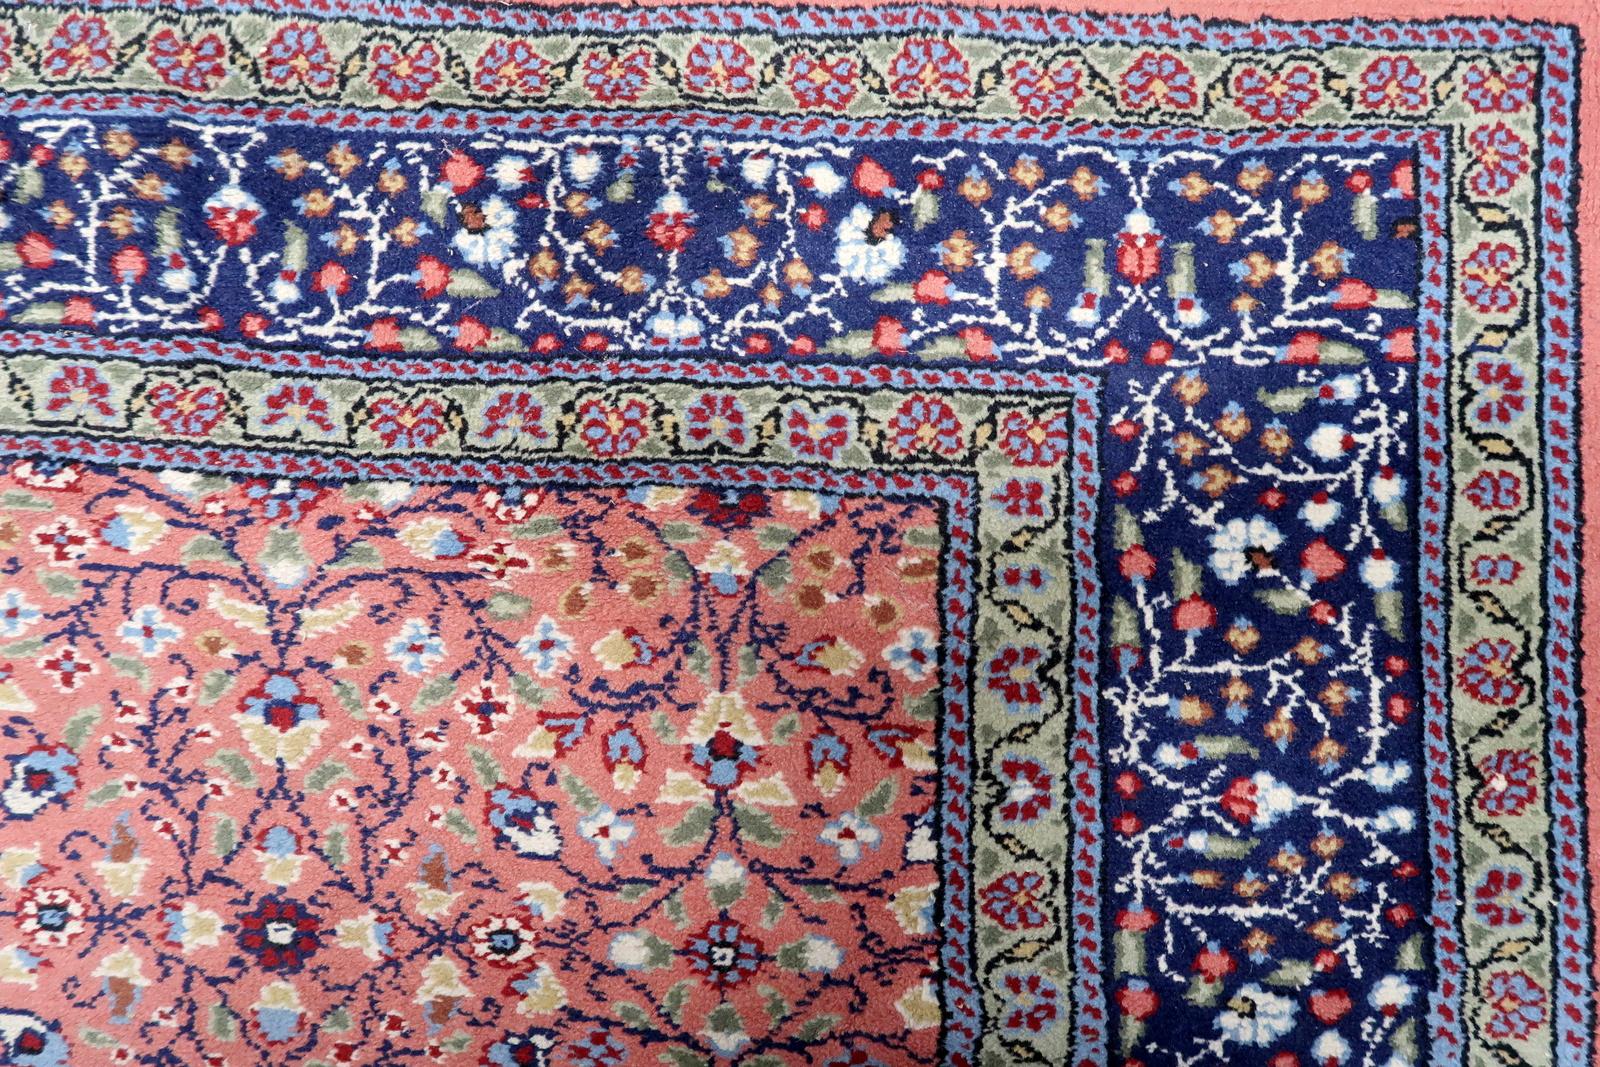  Tauchen Sie ein in die fesselnde Schönheit unseres indischen Vintage Agra Teppichs, der in den 1960er Jahren im Herzen Indiens liebevoll gefertigt wurde. Dieser Teppich ist von ursprünglicher Güte und verkörpert ein Stück Geschichte, das den Test